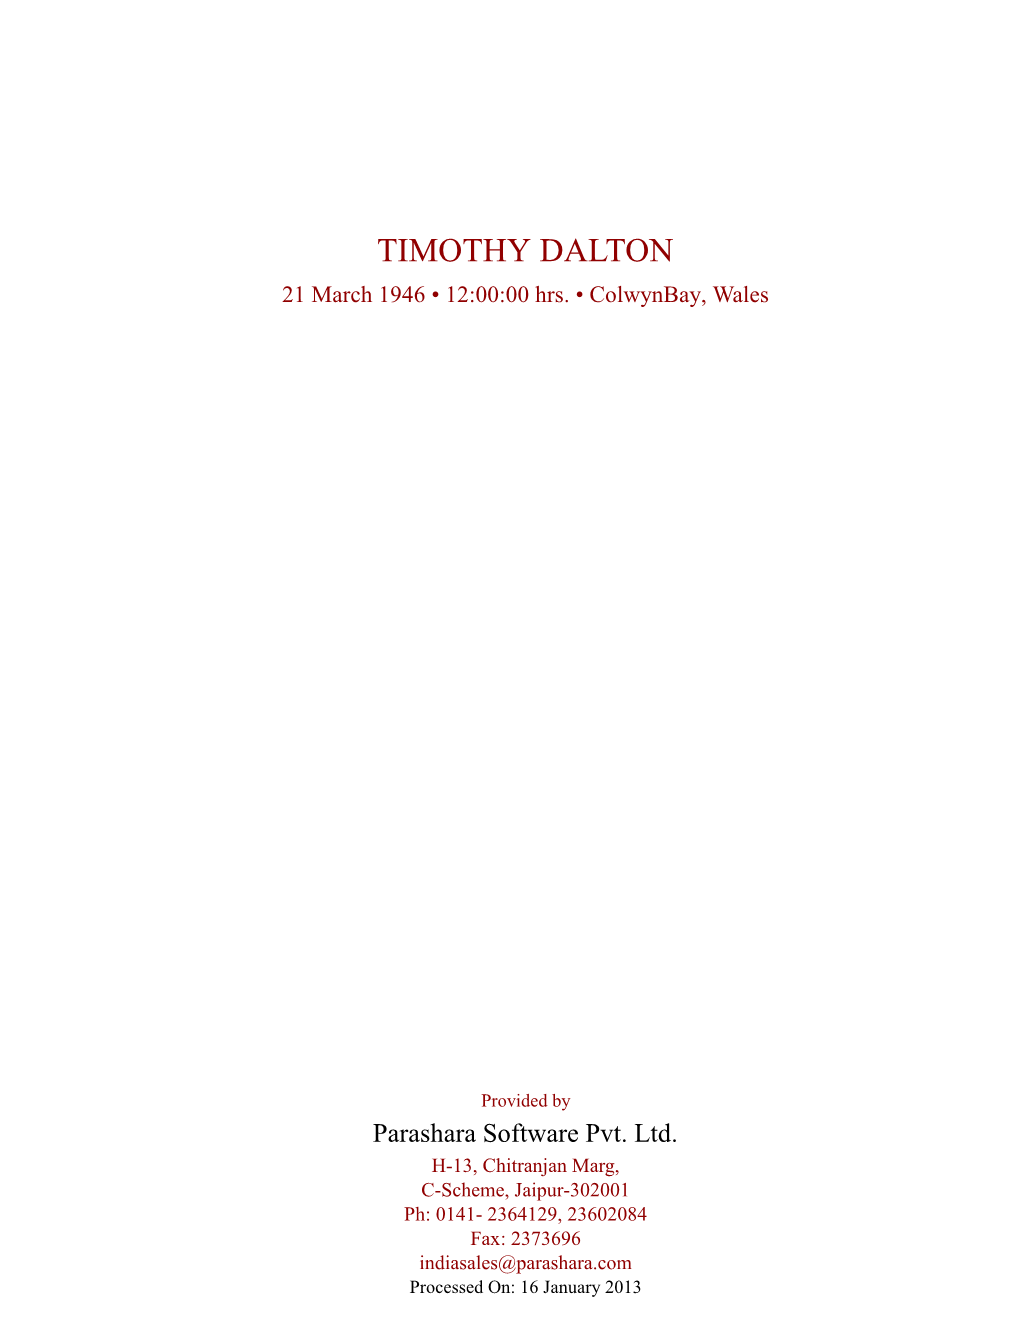 TIMOTHY DALTON 21 March 1946 • 12:00:00 Hrs